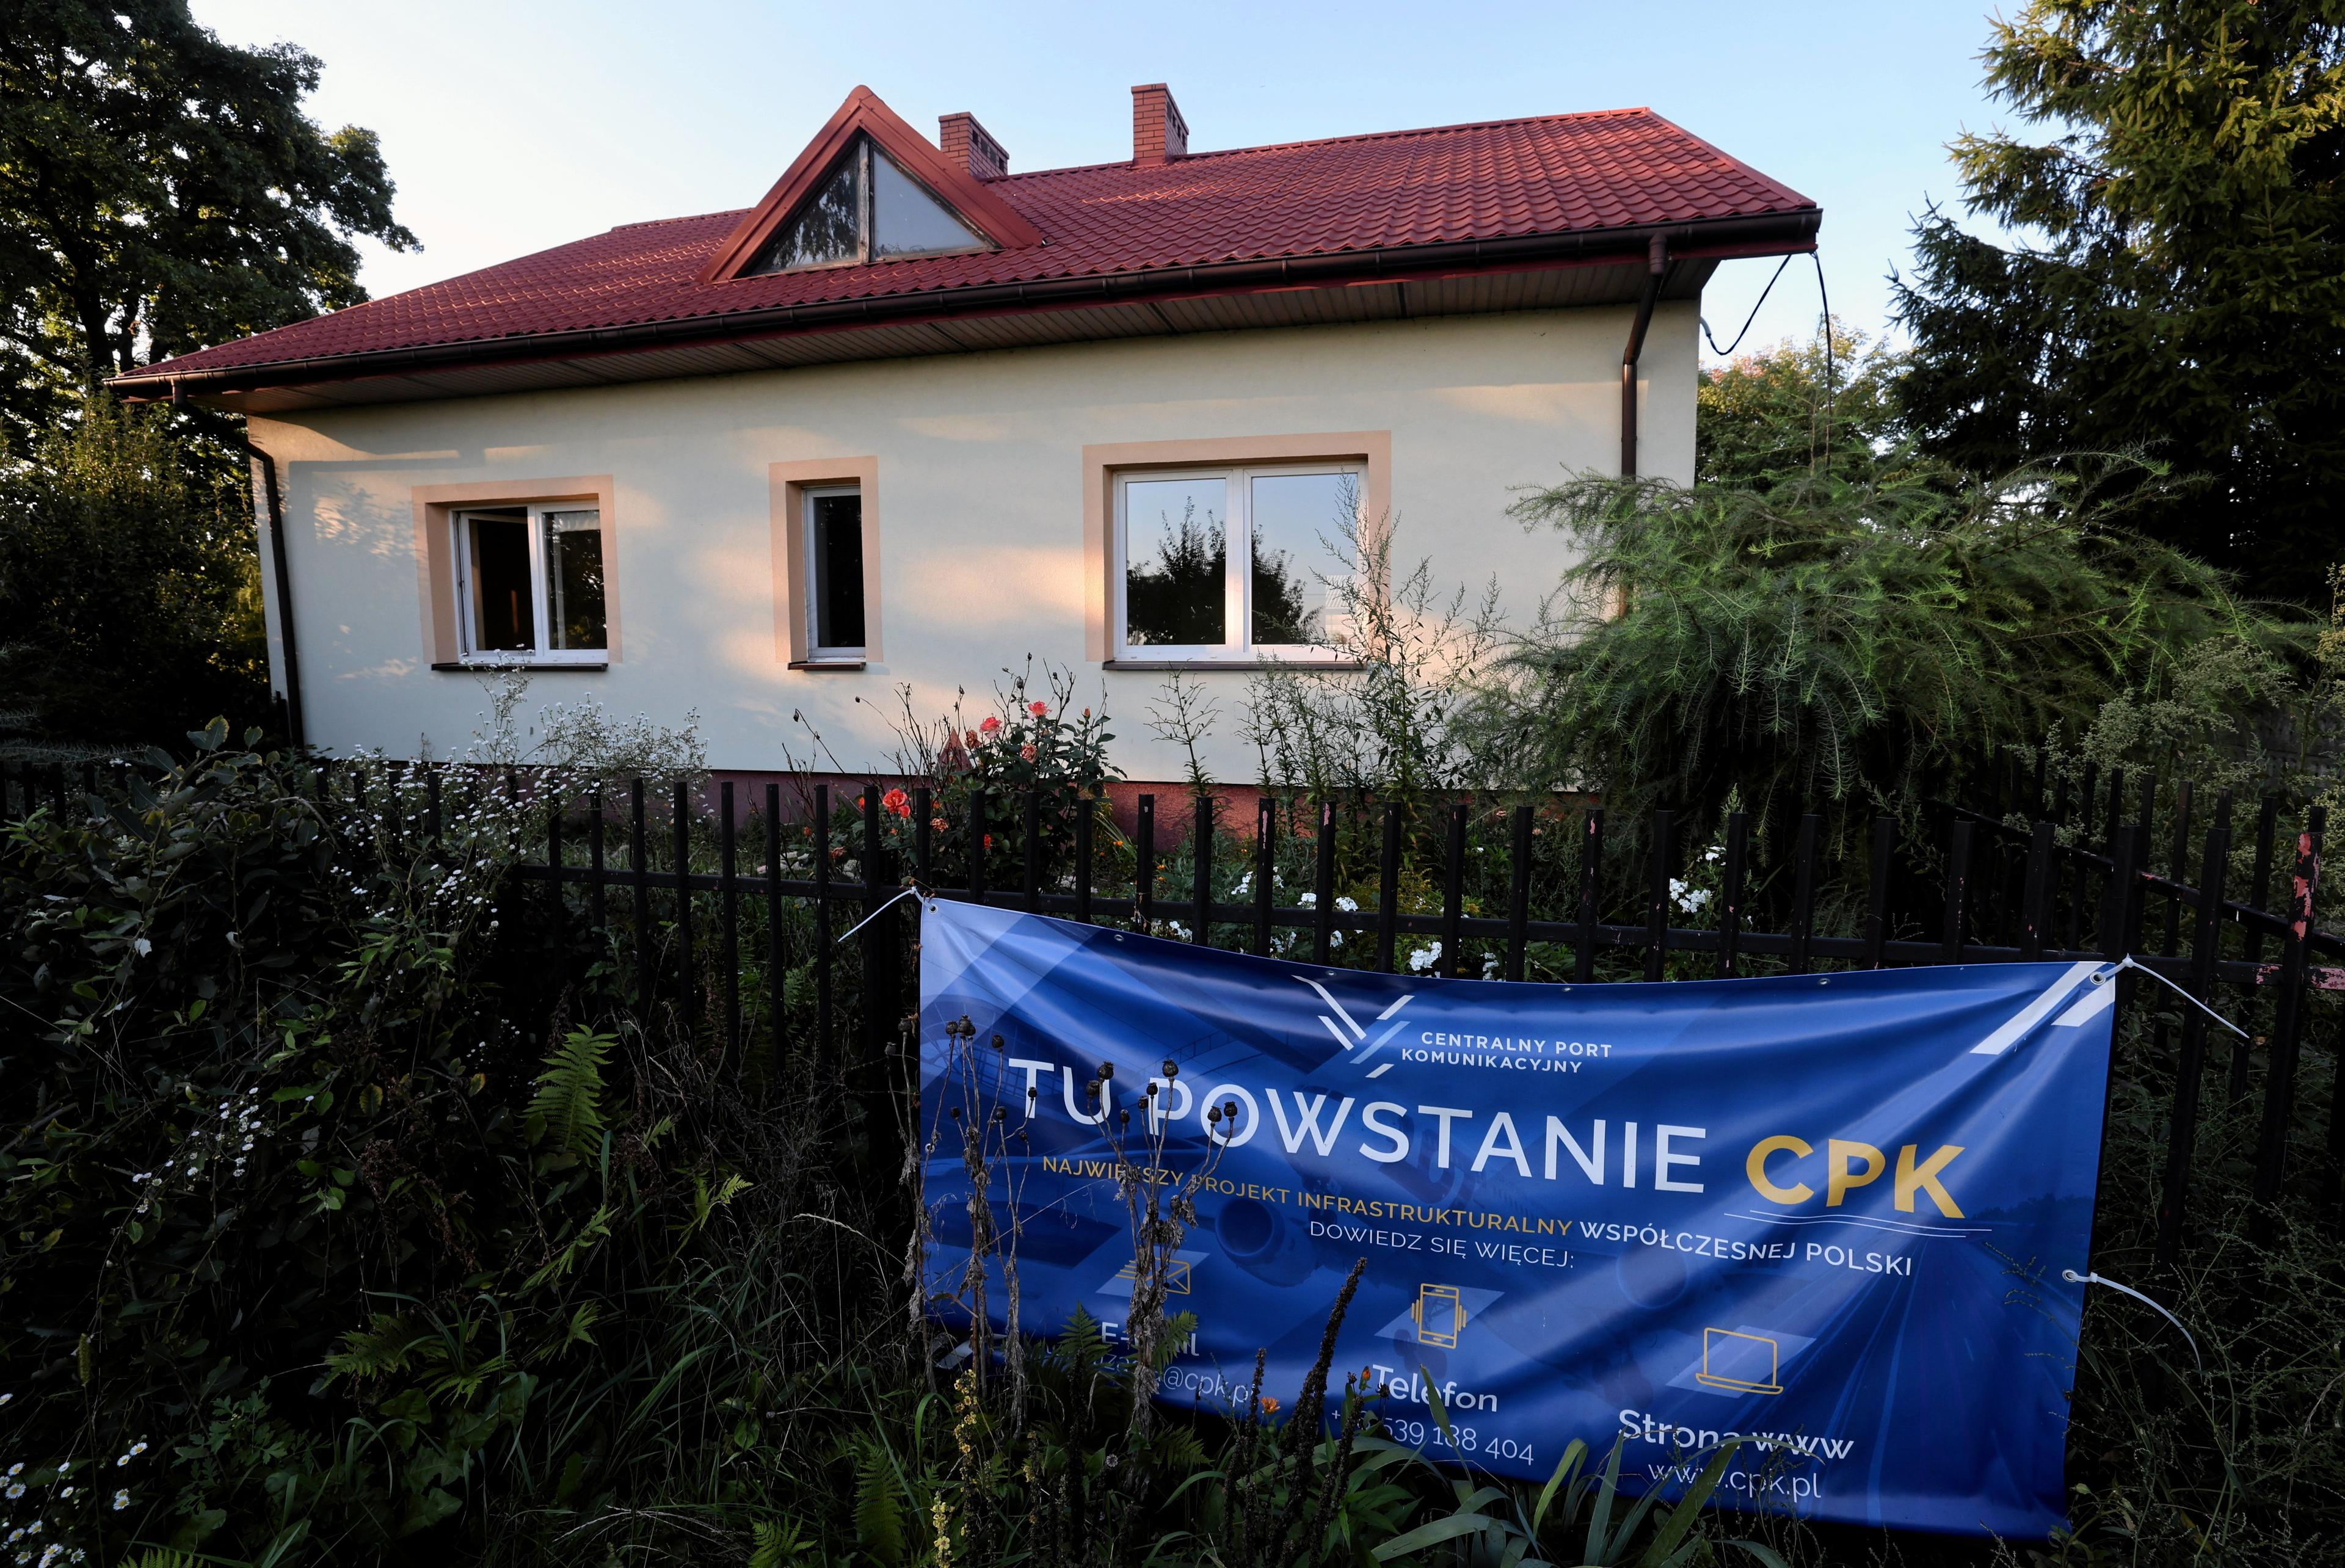 Wiejski dom, na płocie wisi baner z napisem „Tu powstanie CPK”.